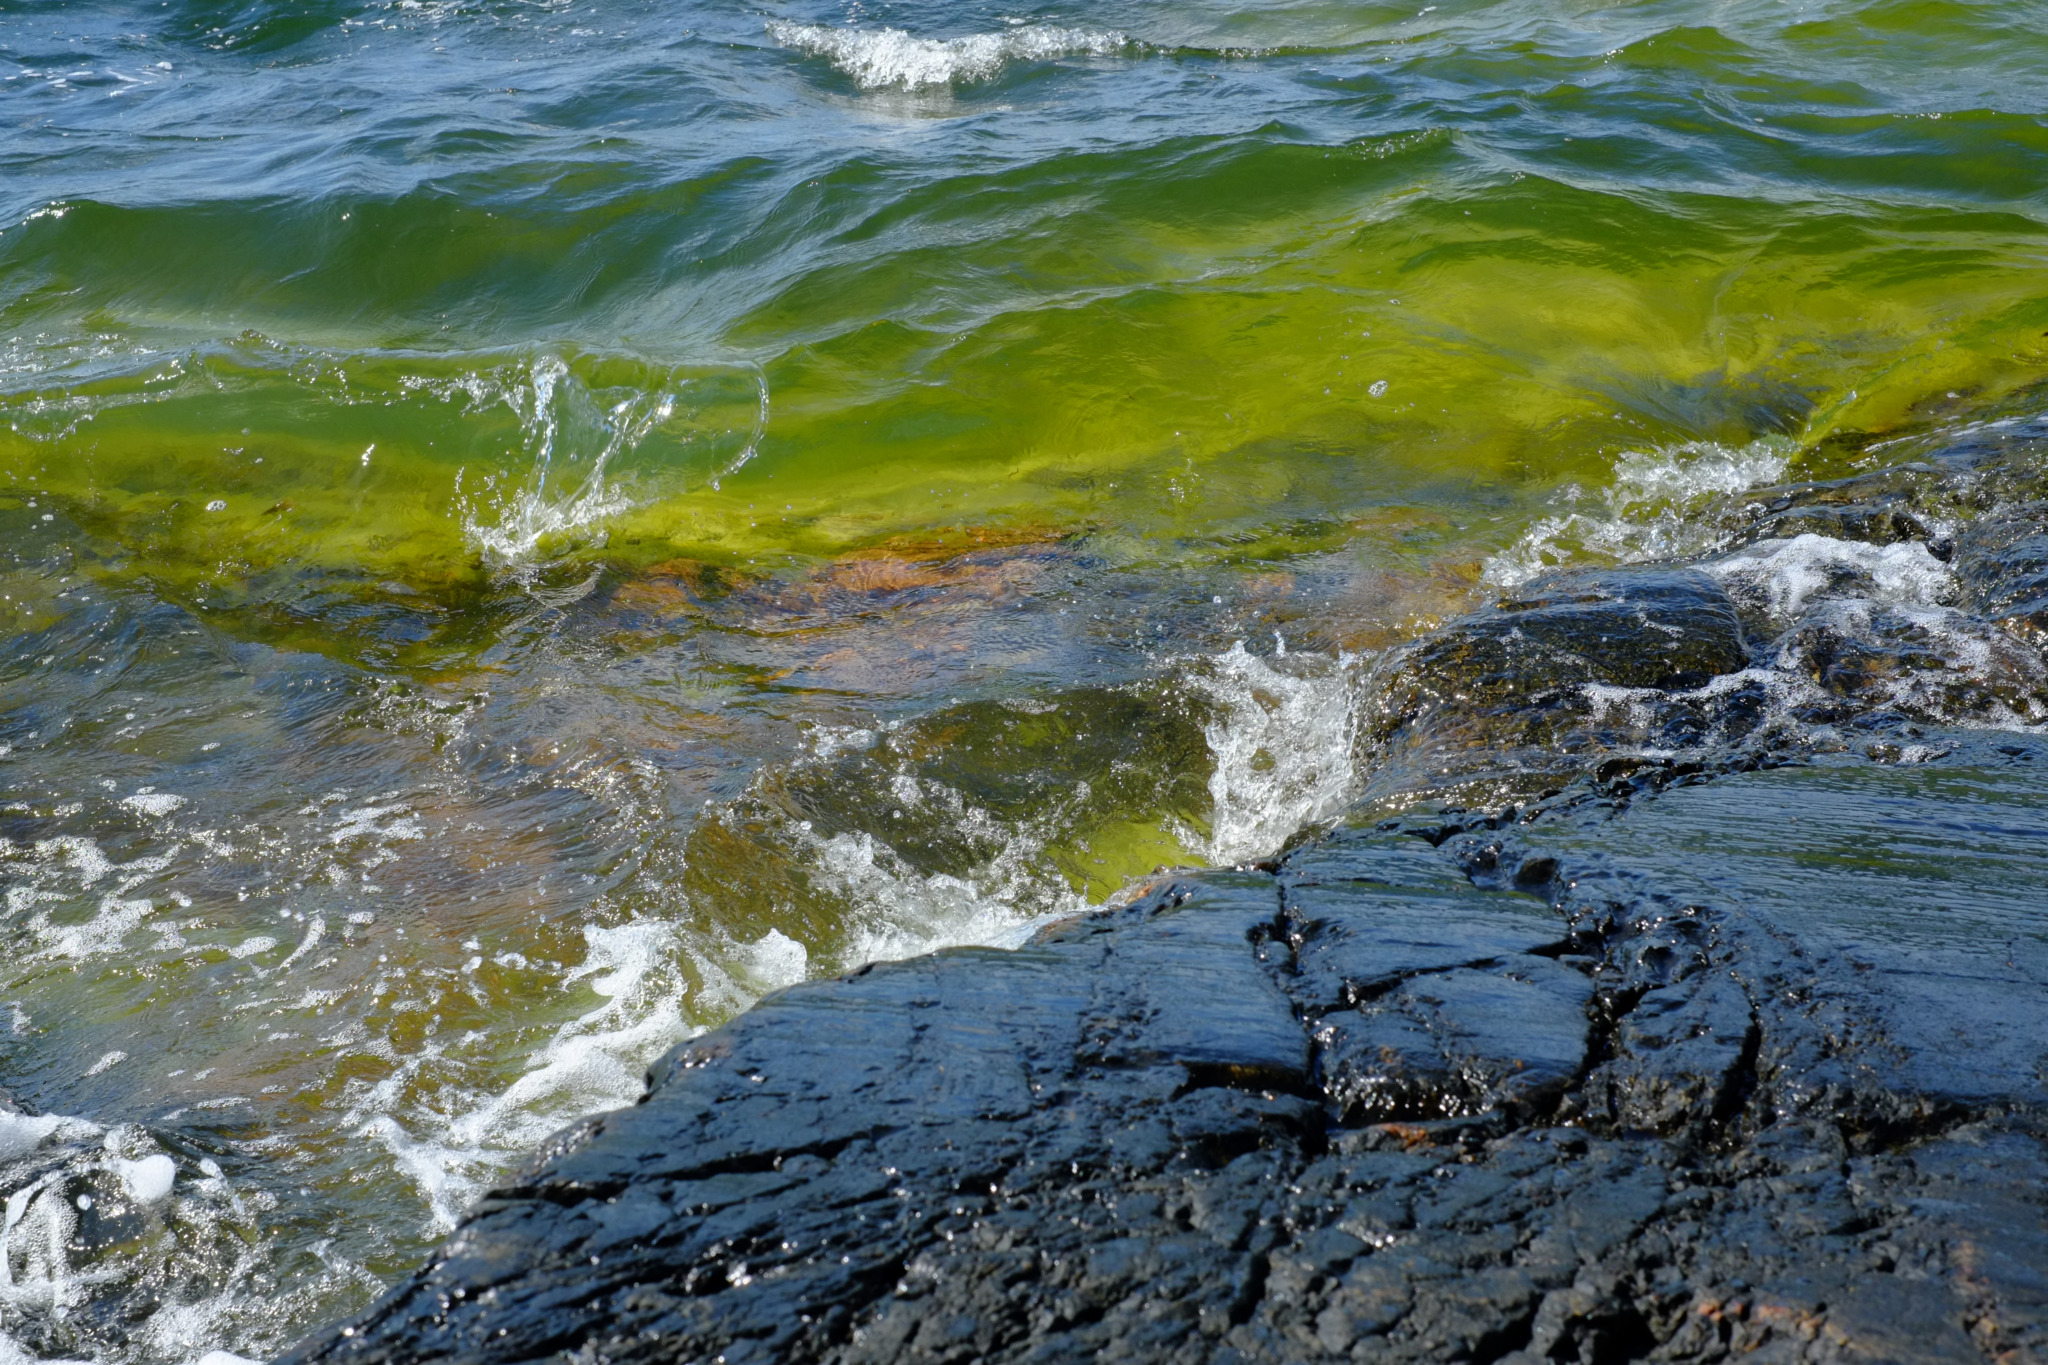 Green algae, waves hitting a rock